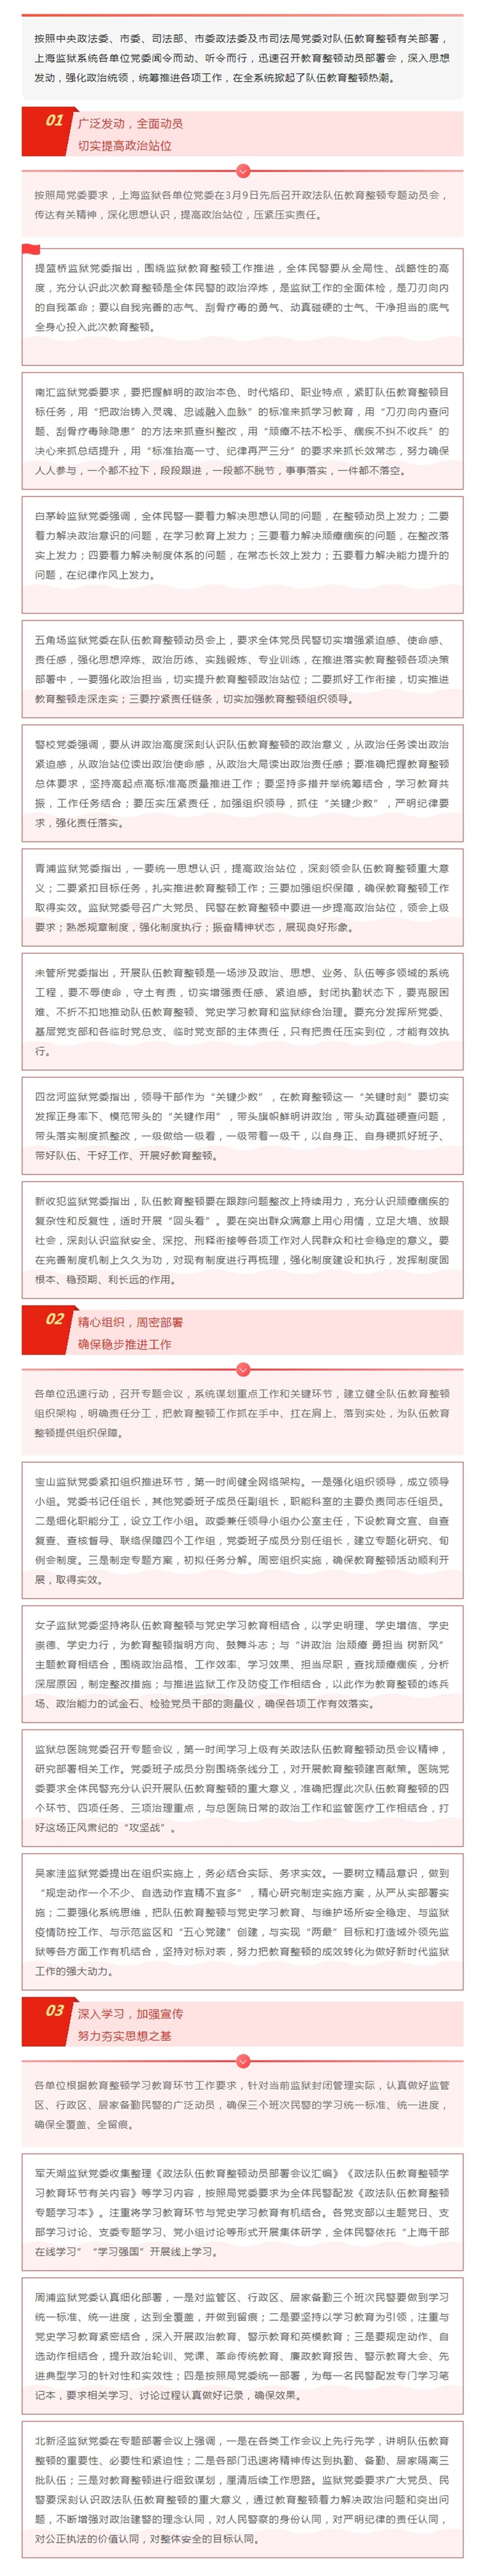 上海监狱系统掀起队伍教育整顿热潮.jpg